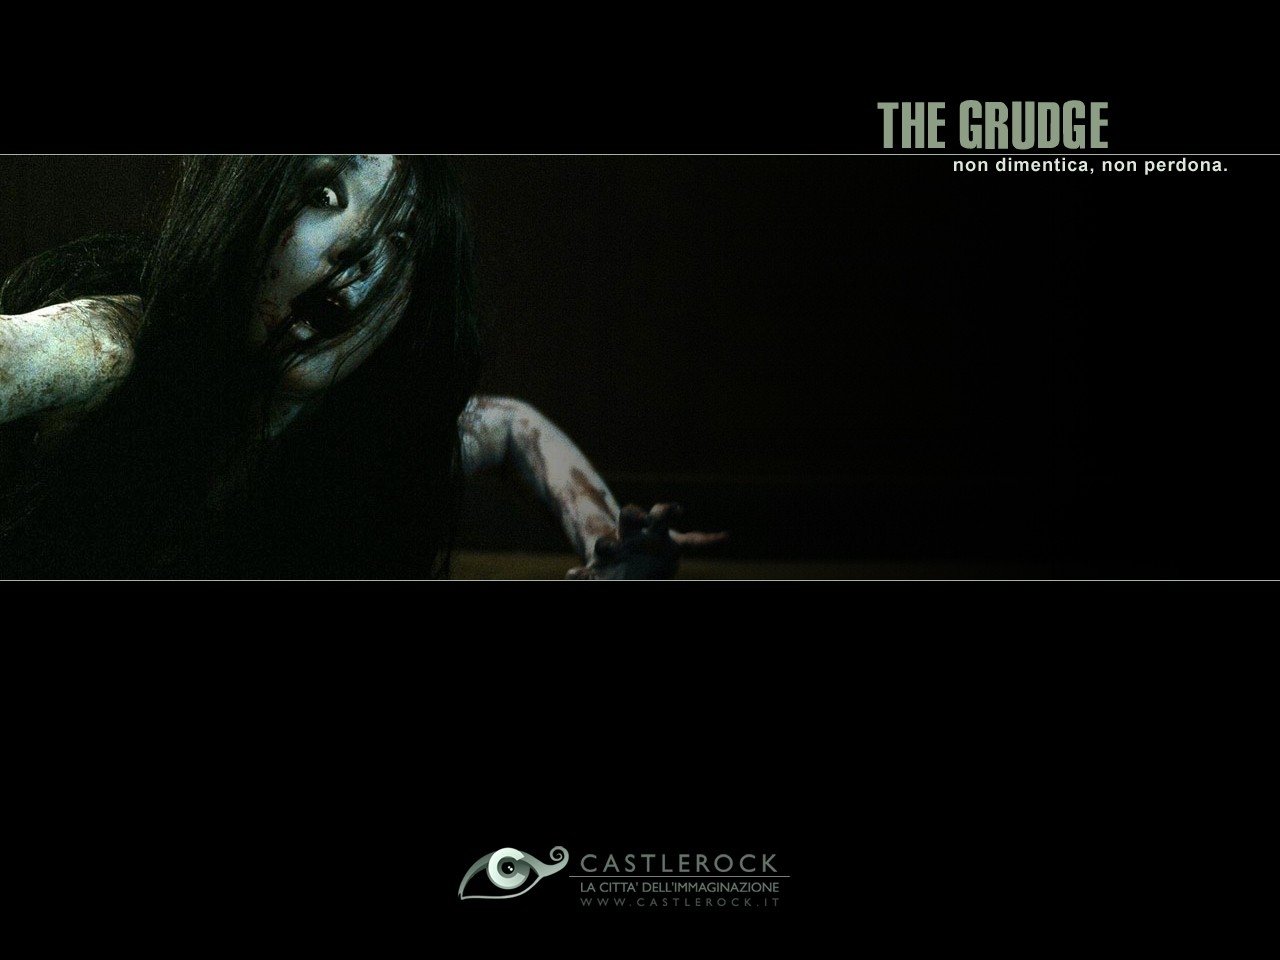 Wallpaper dell'horror The Grudge. Scarica il wallpaper in formato 1280 x 960